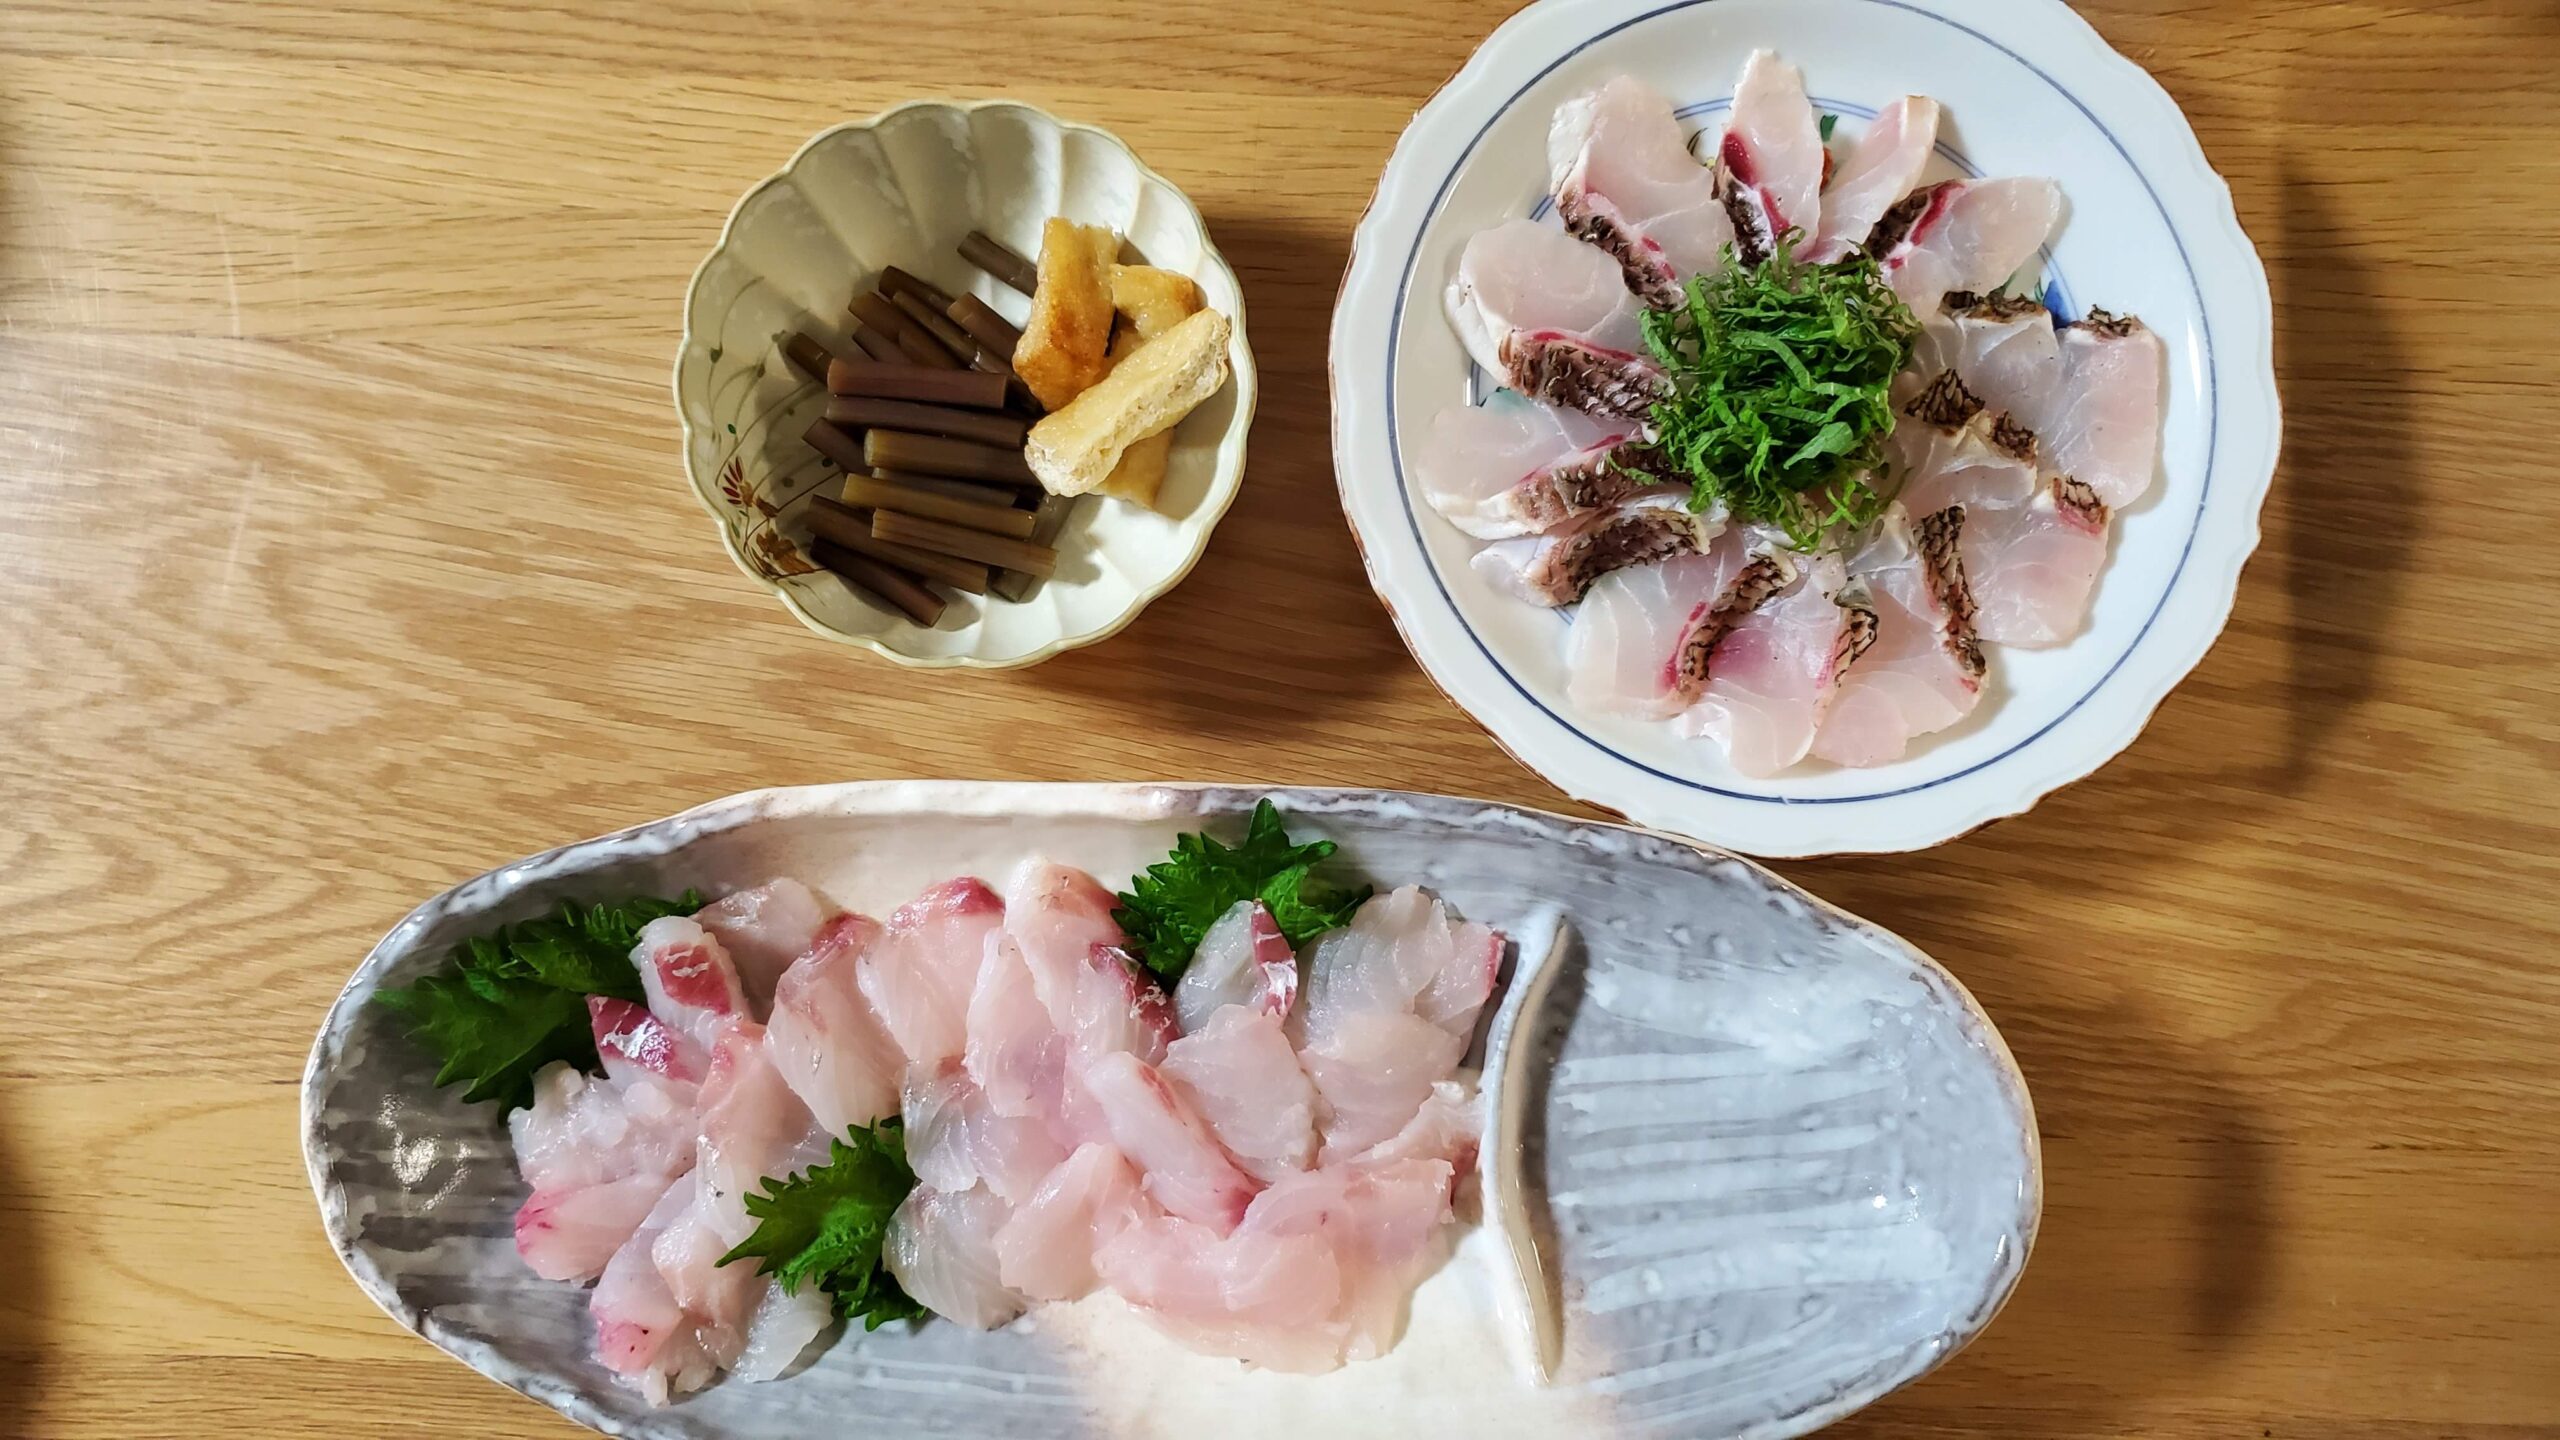 大きな鯛の炙りは皮が硬く 天ぷらはフワフワ感が美味でした 釣りしタイラバ